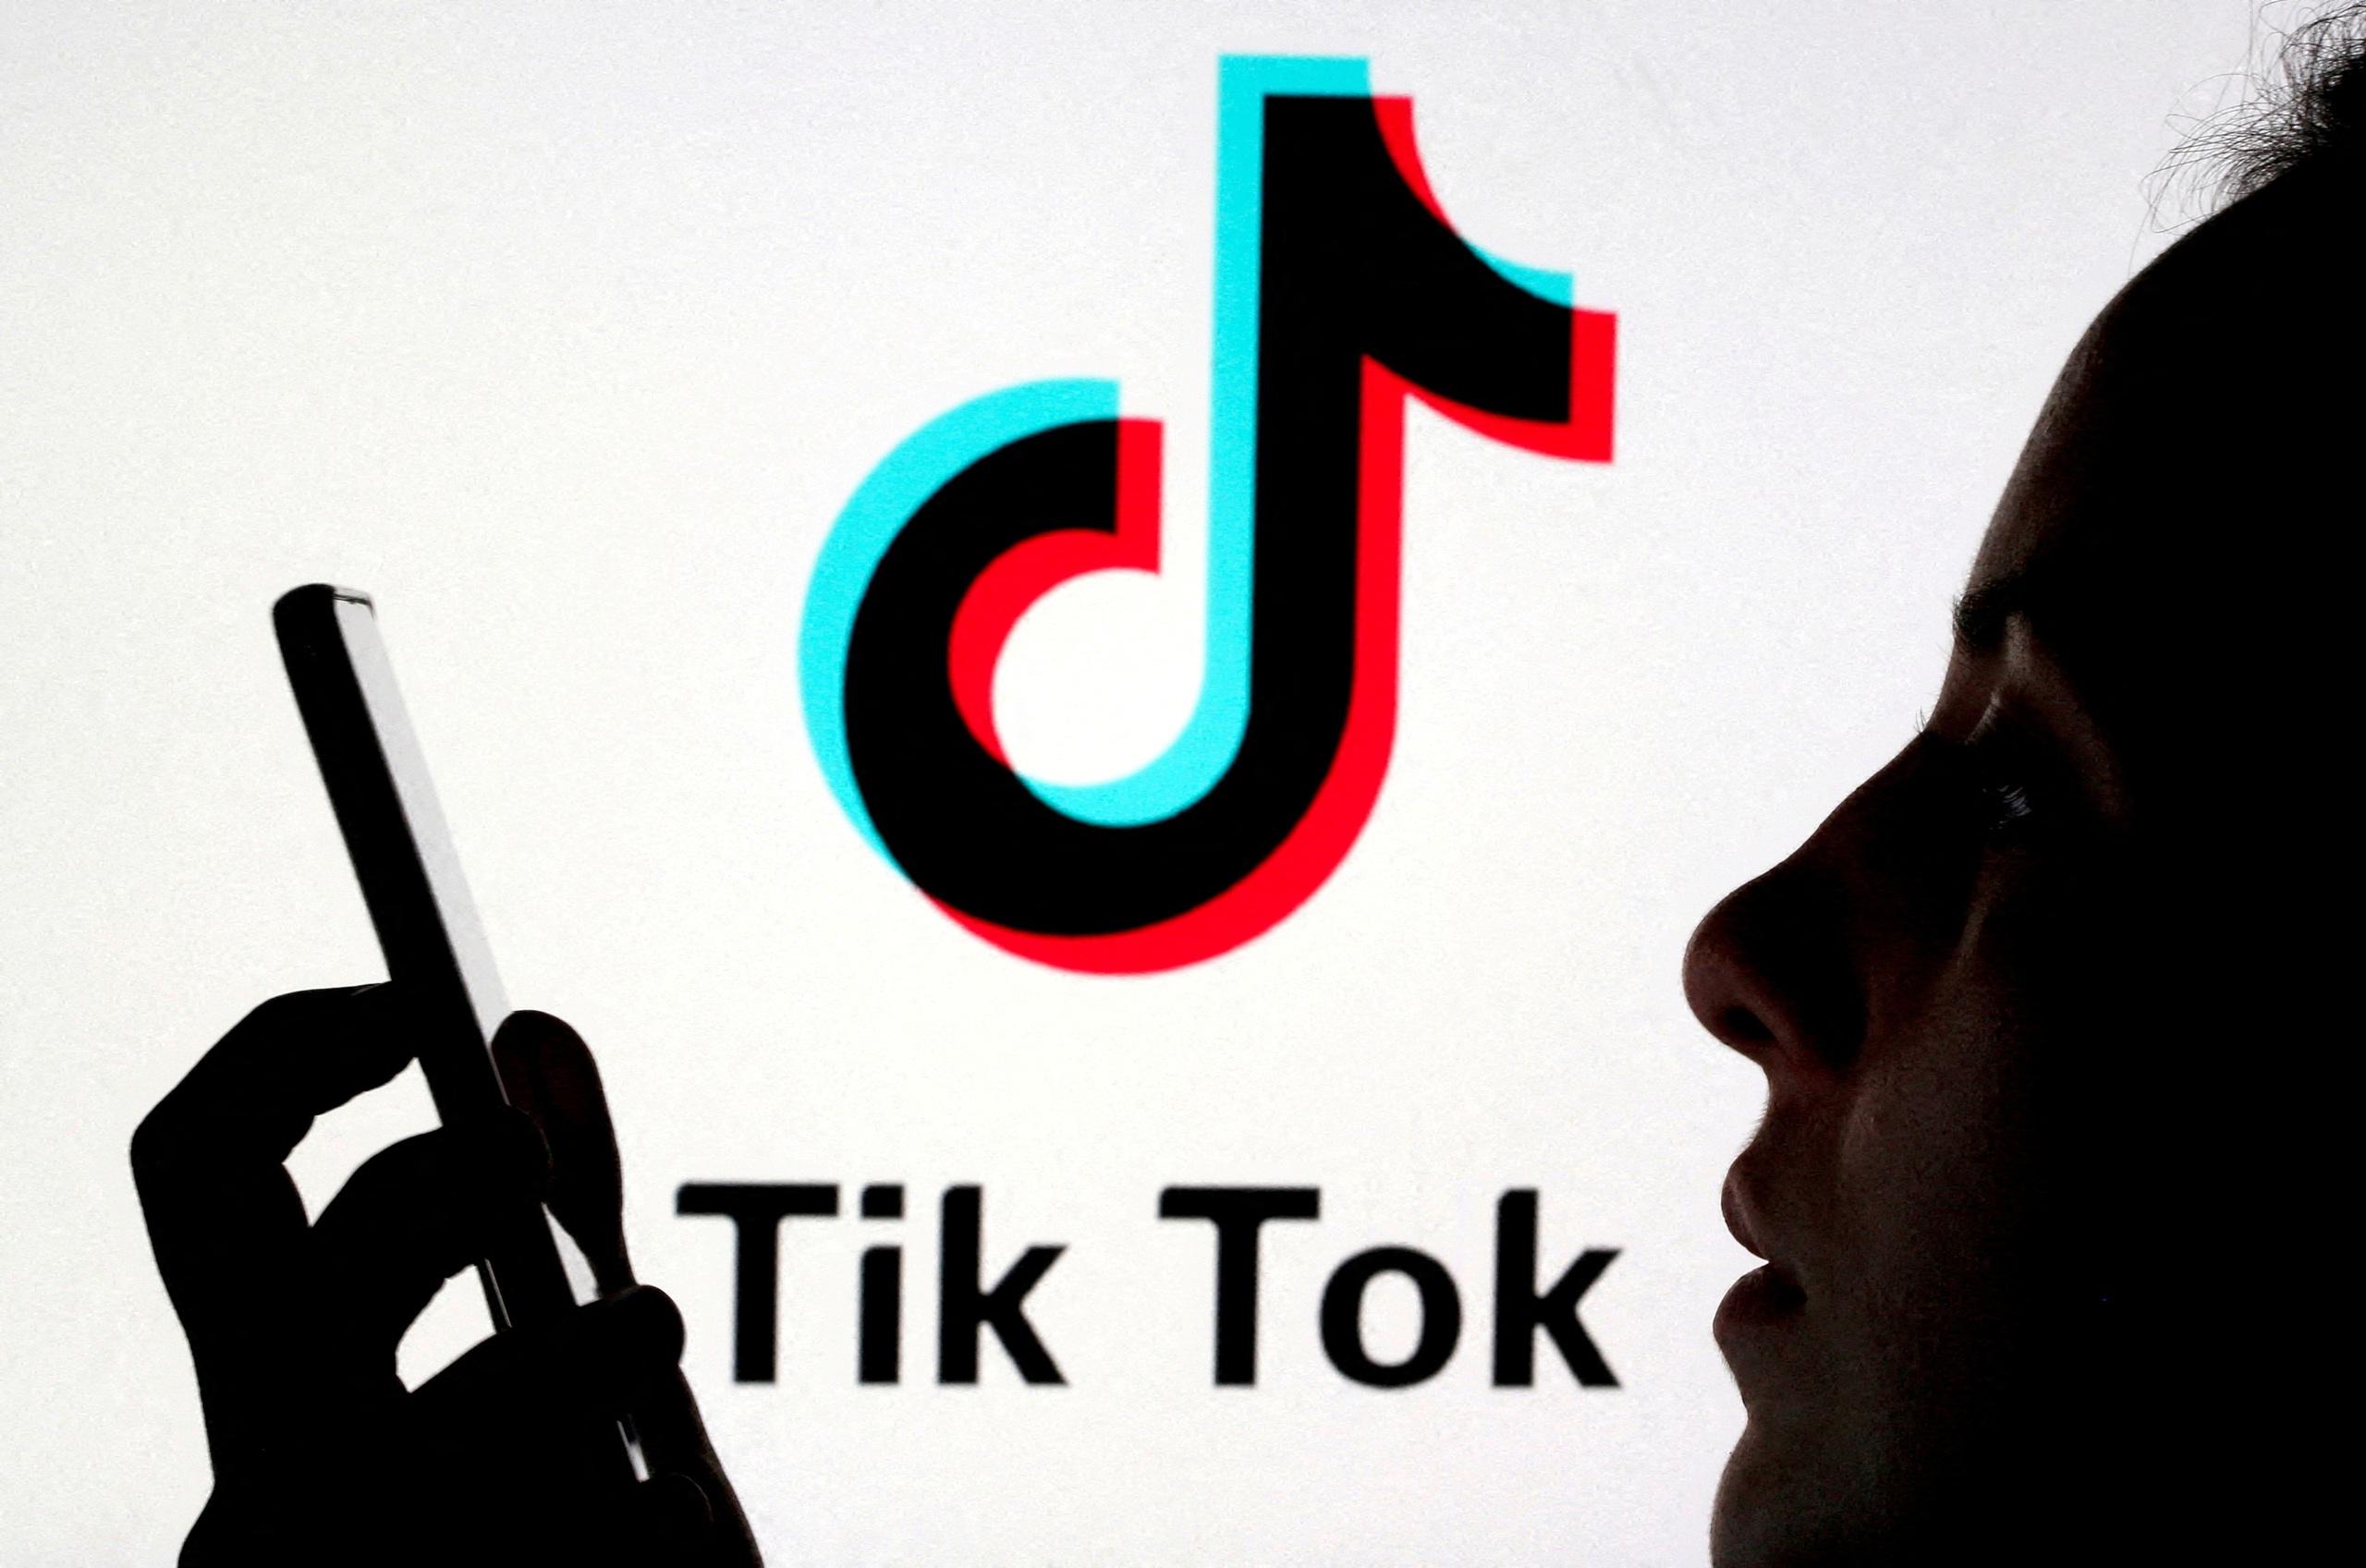 Người dùng TikTok kiện chính phủ Mỹ để ngăn lệnh cấm